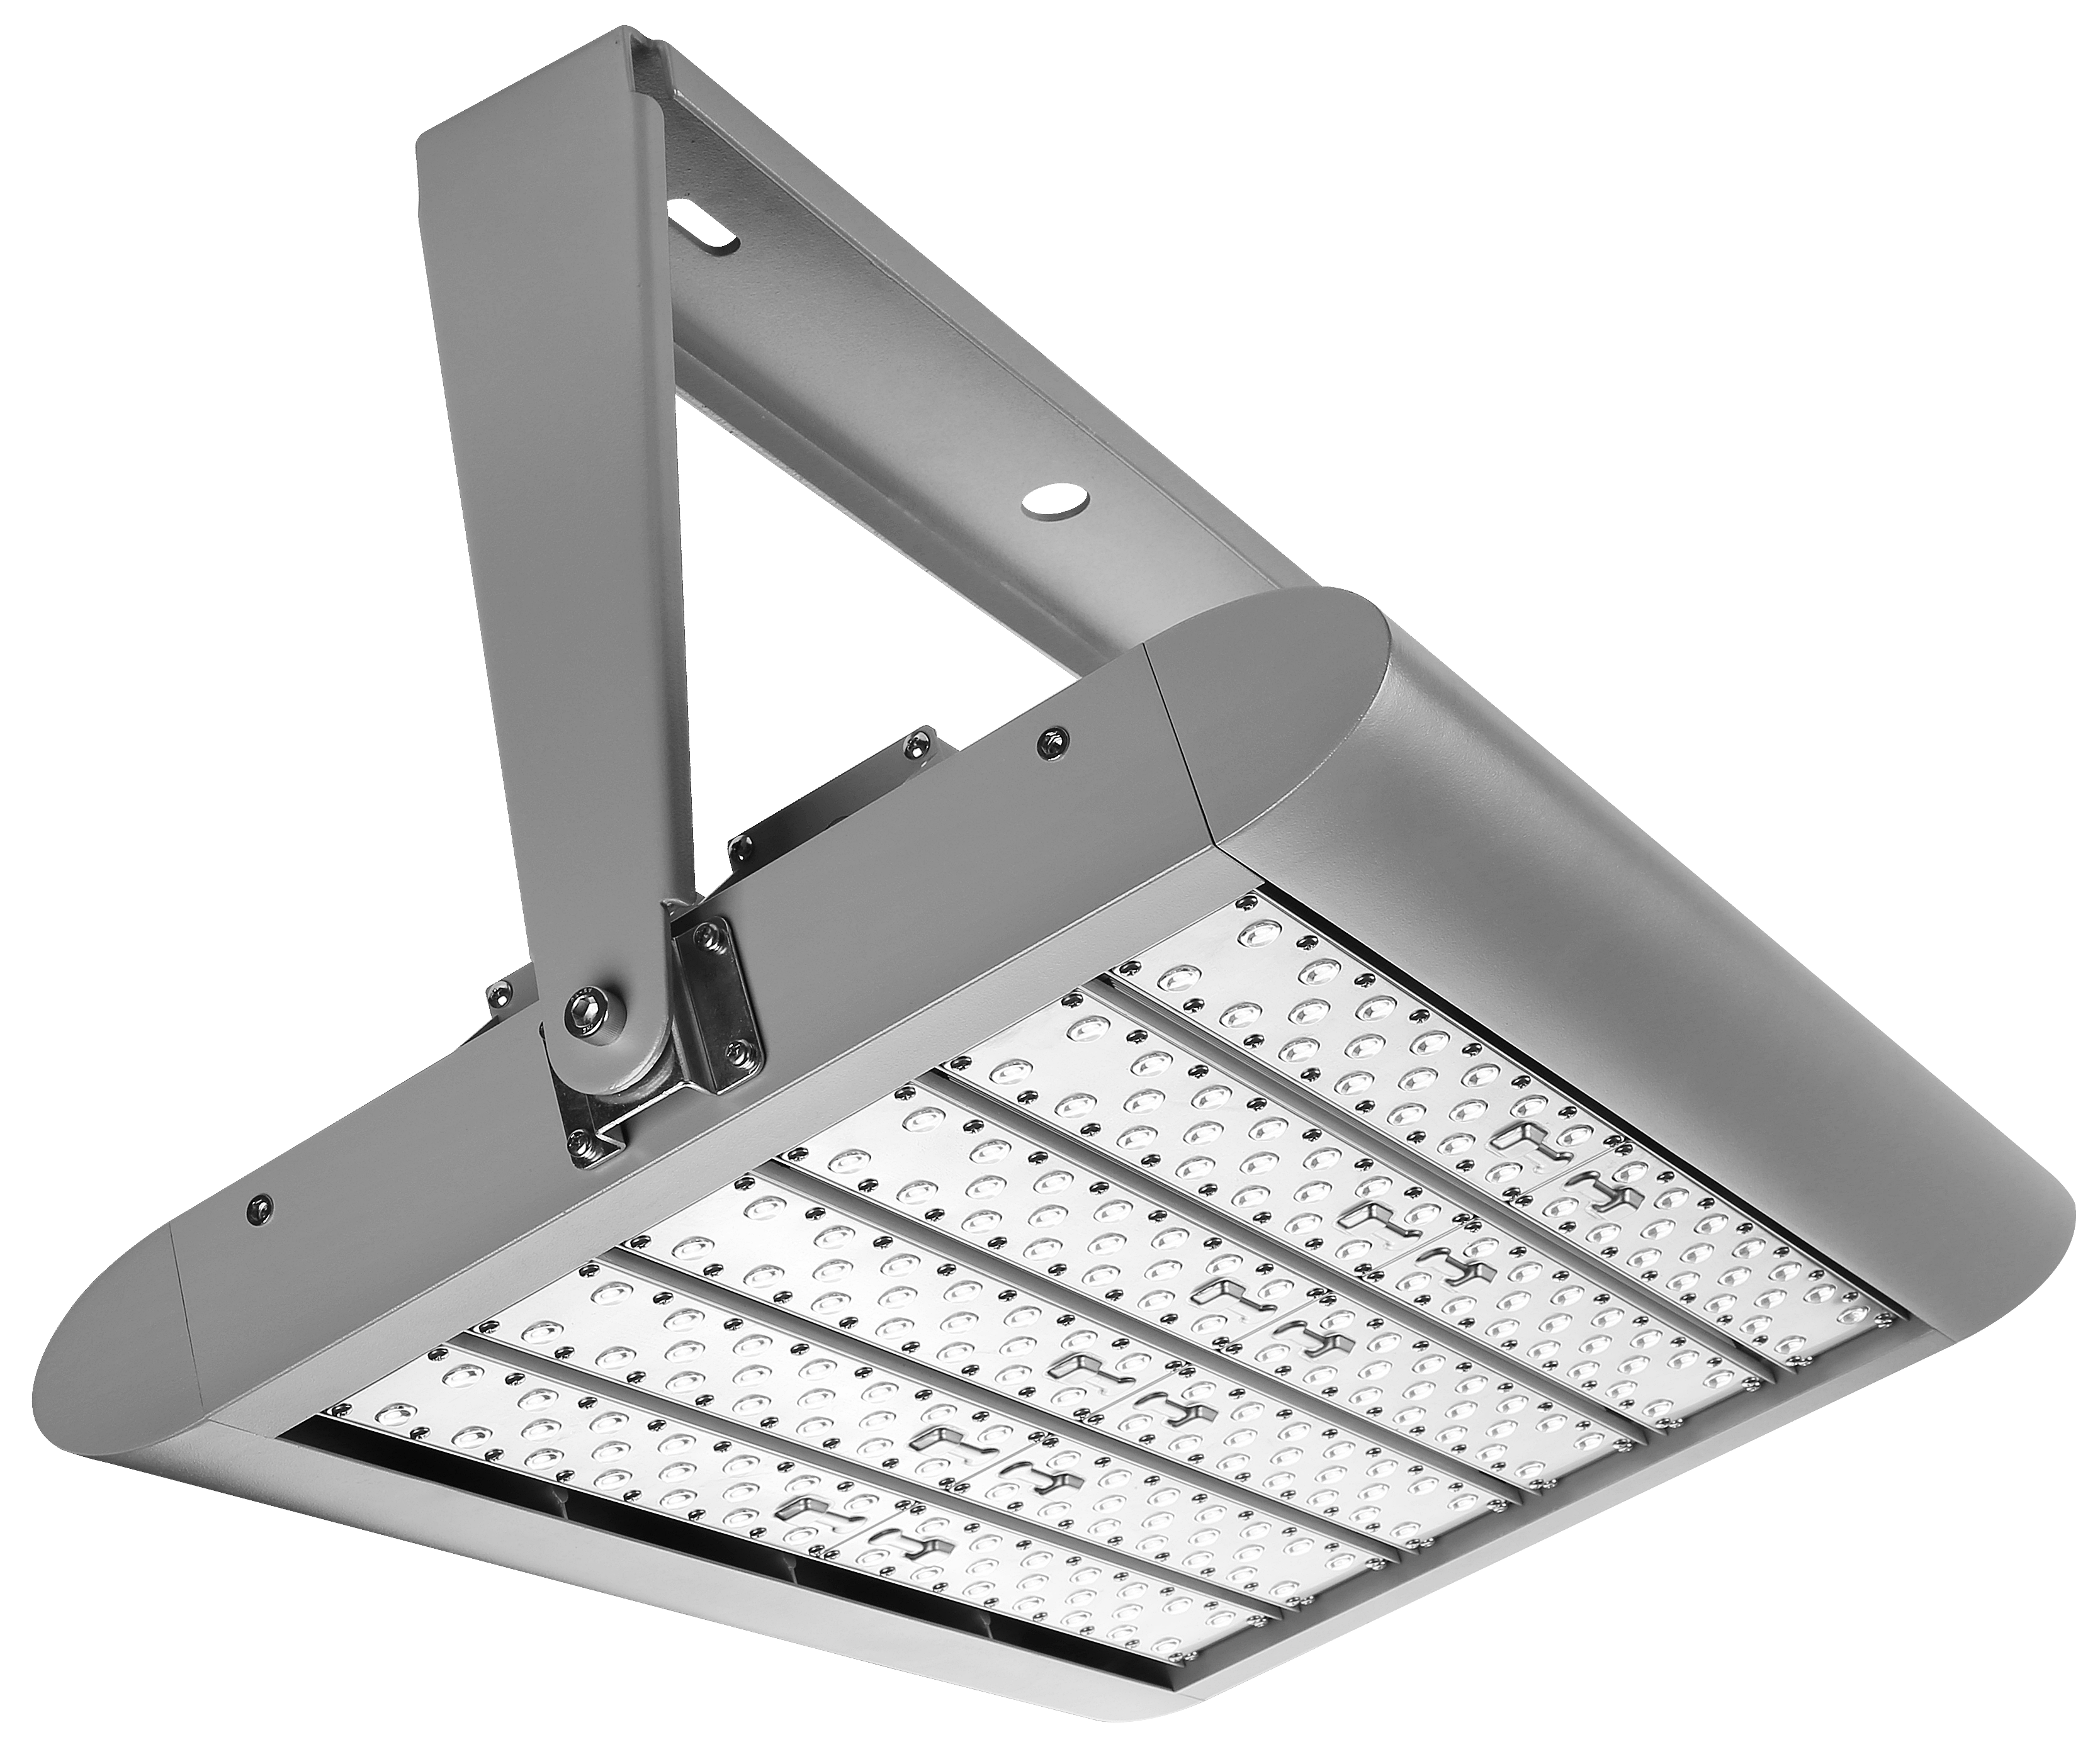 UVED 6SW UV-LEDFloodlight with white light